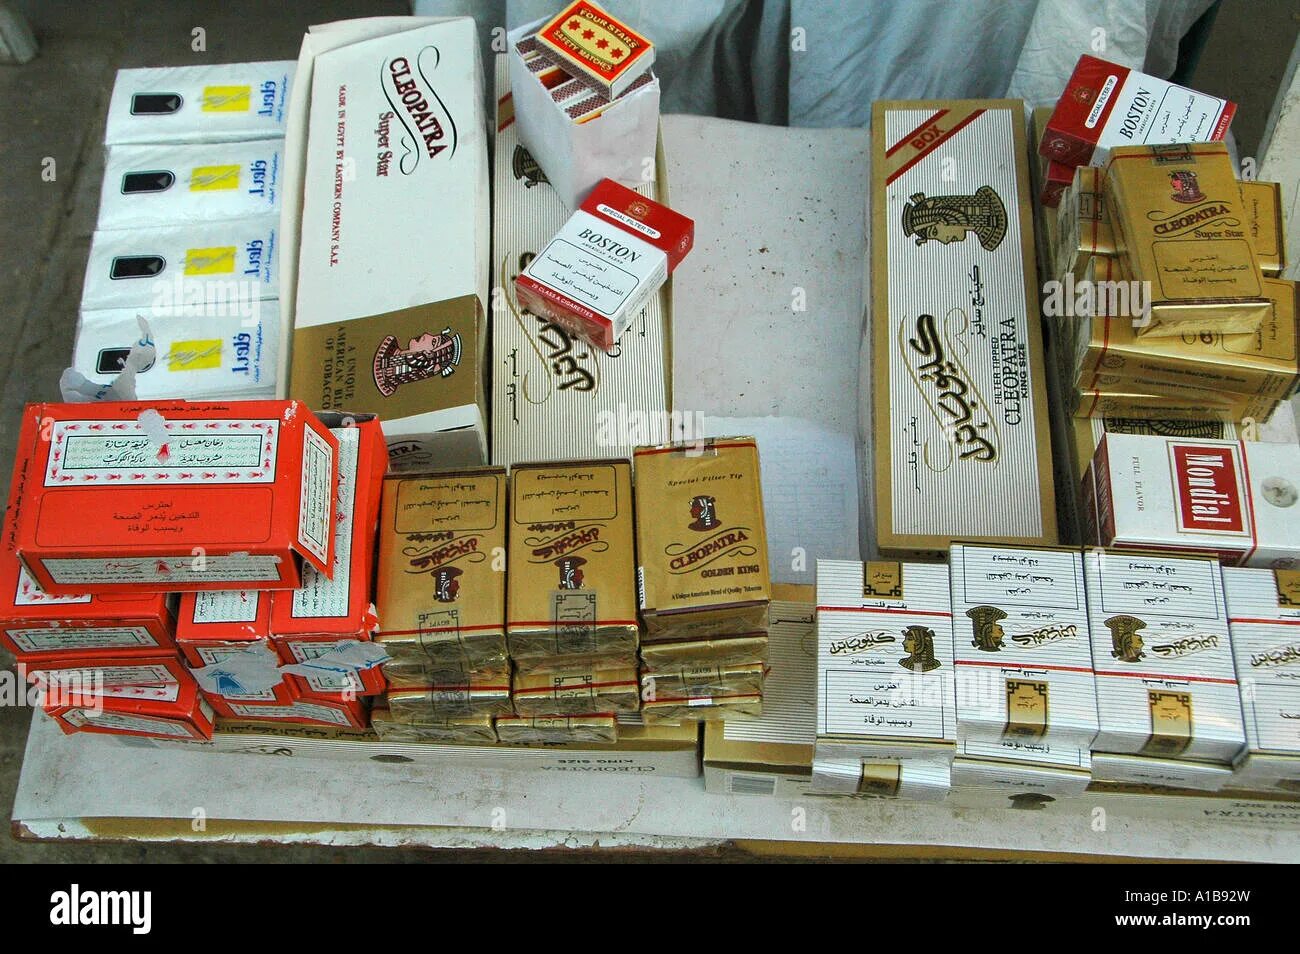 Сигареты LM Египте. Сигареты в Египте. Merit cigarettes in Egypt.